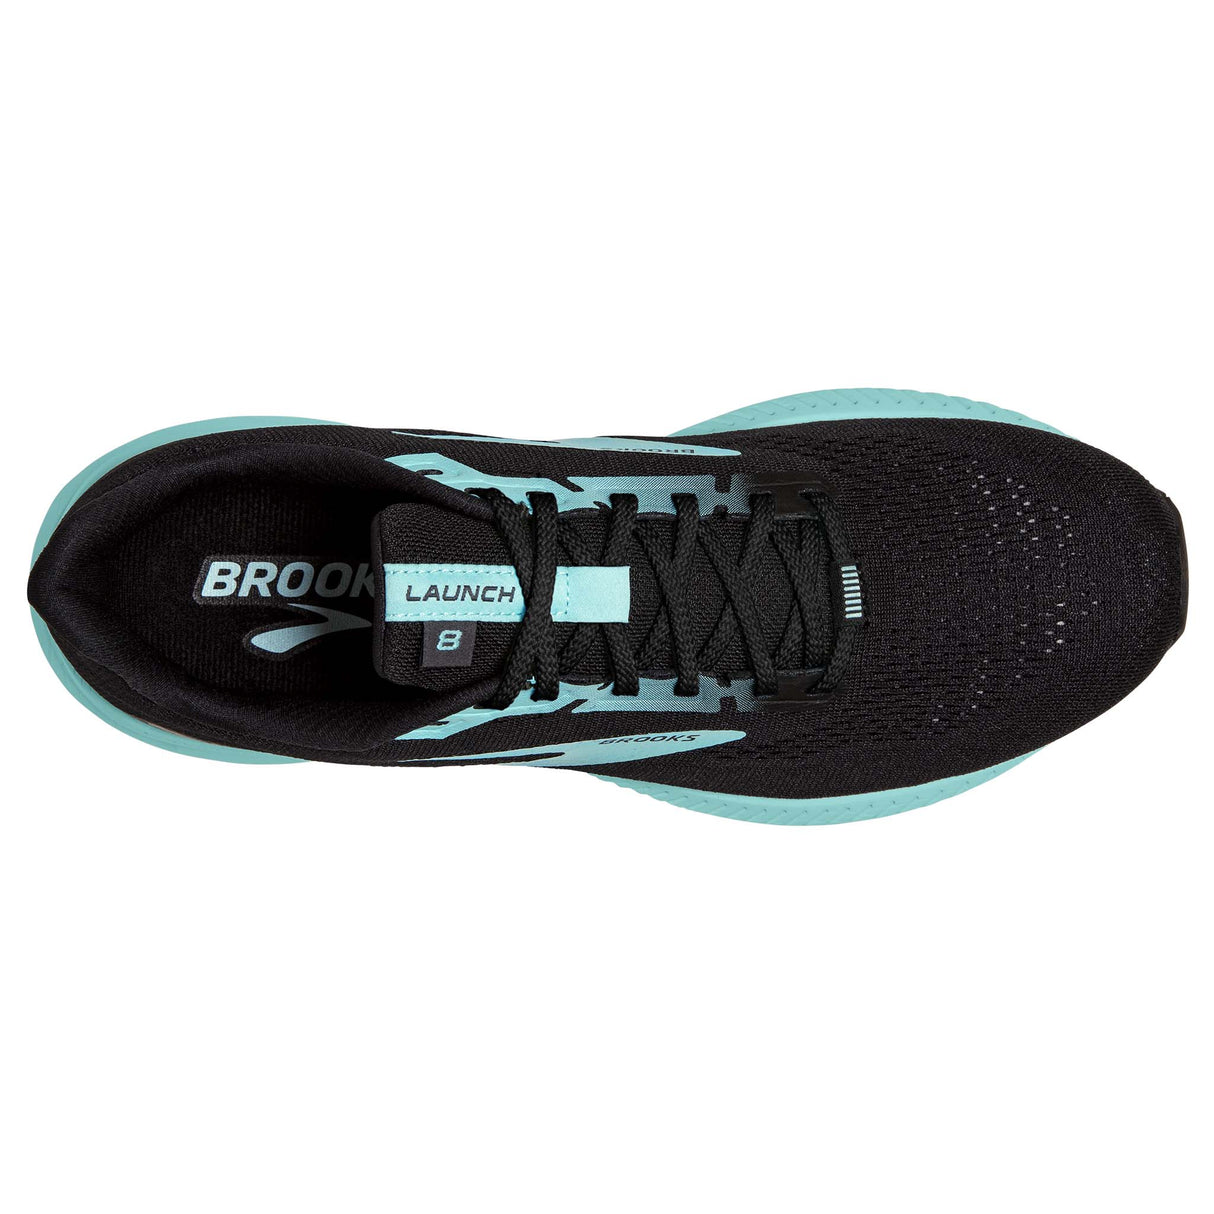 Brooks Launch 8 souliers de course femme black ebony blue tint empeigne